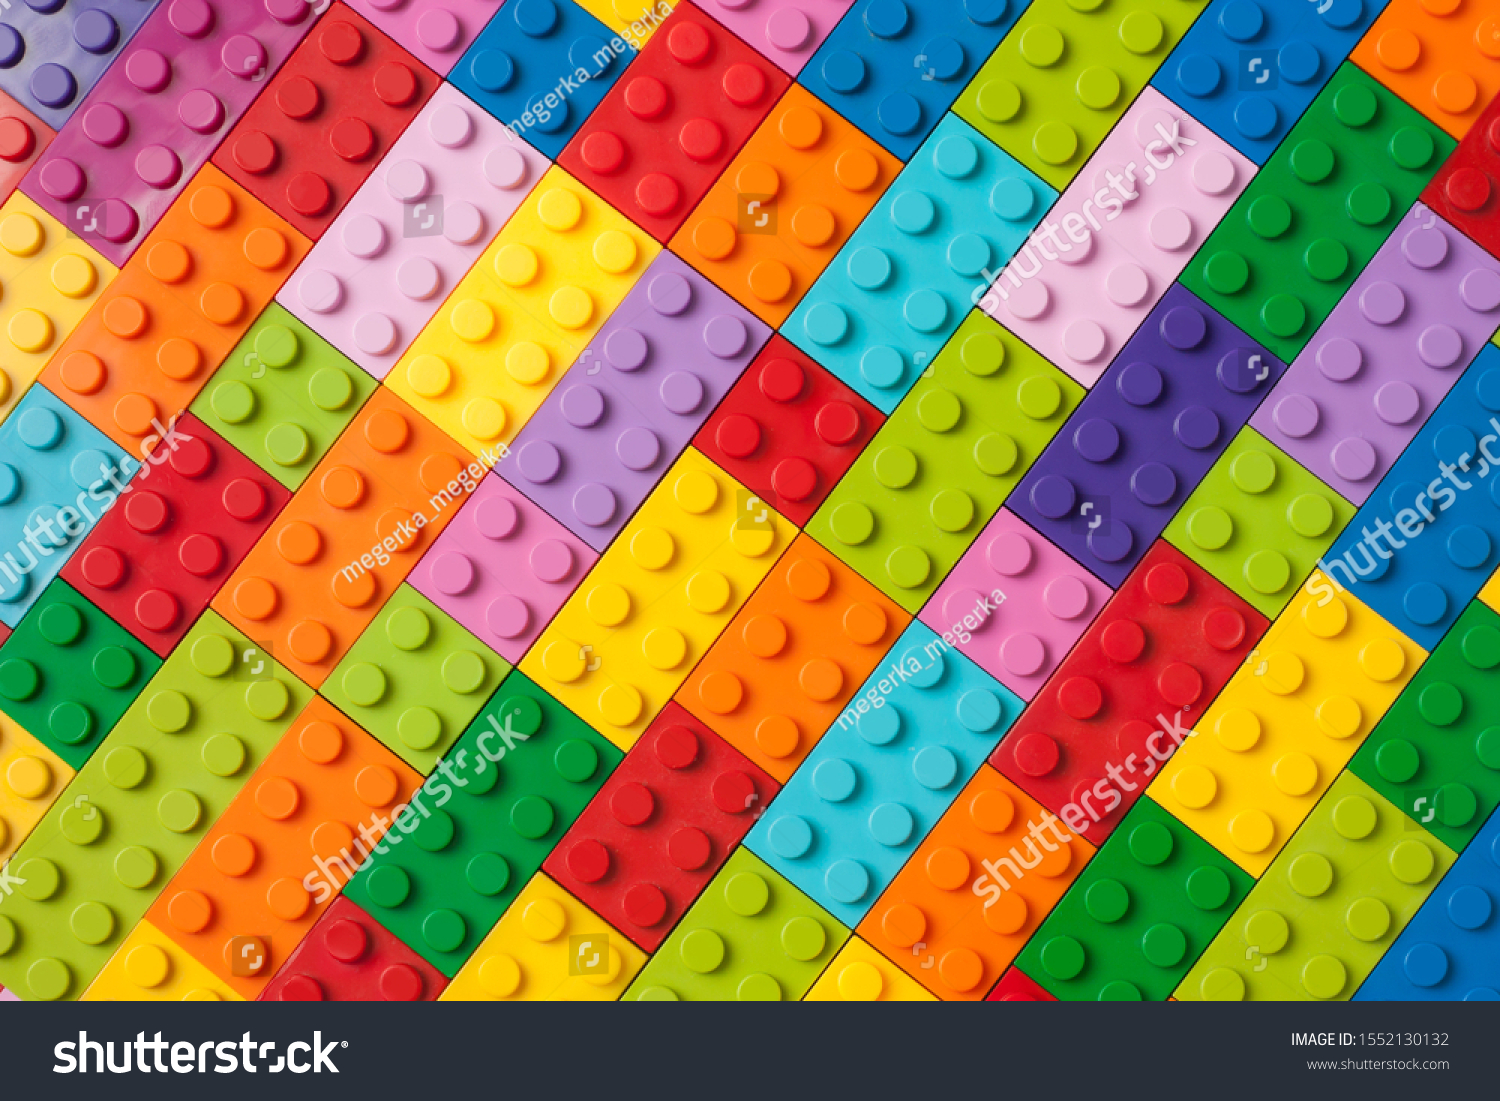 Lego wallpaper images stock photos vectors